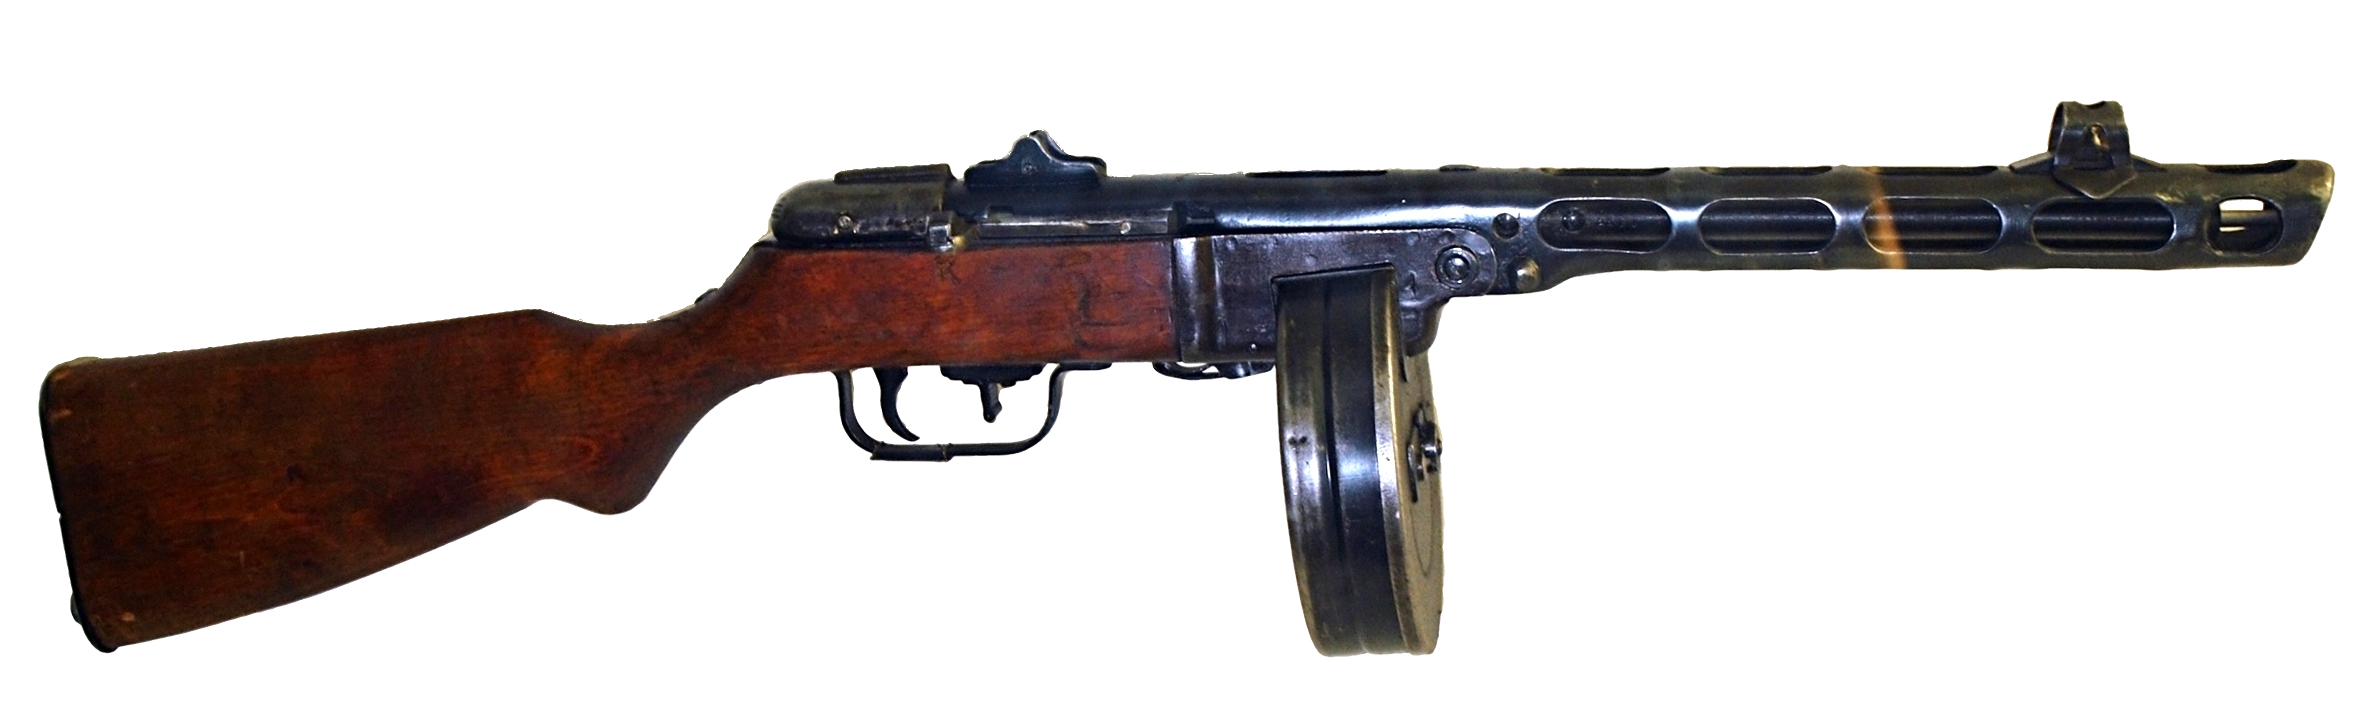 Пистолет-Пулемет ППШ-М ВПО-512  - фото 1